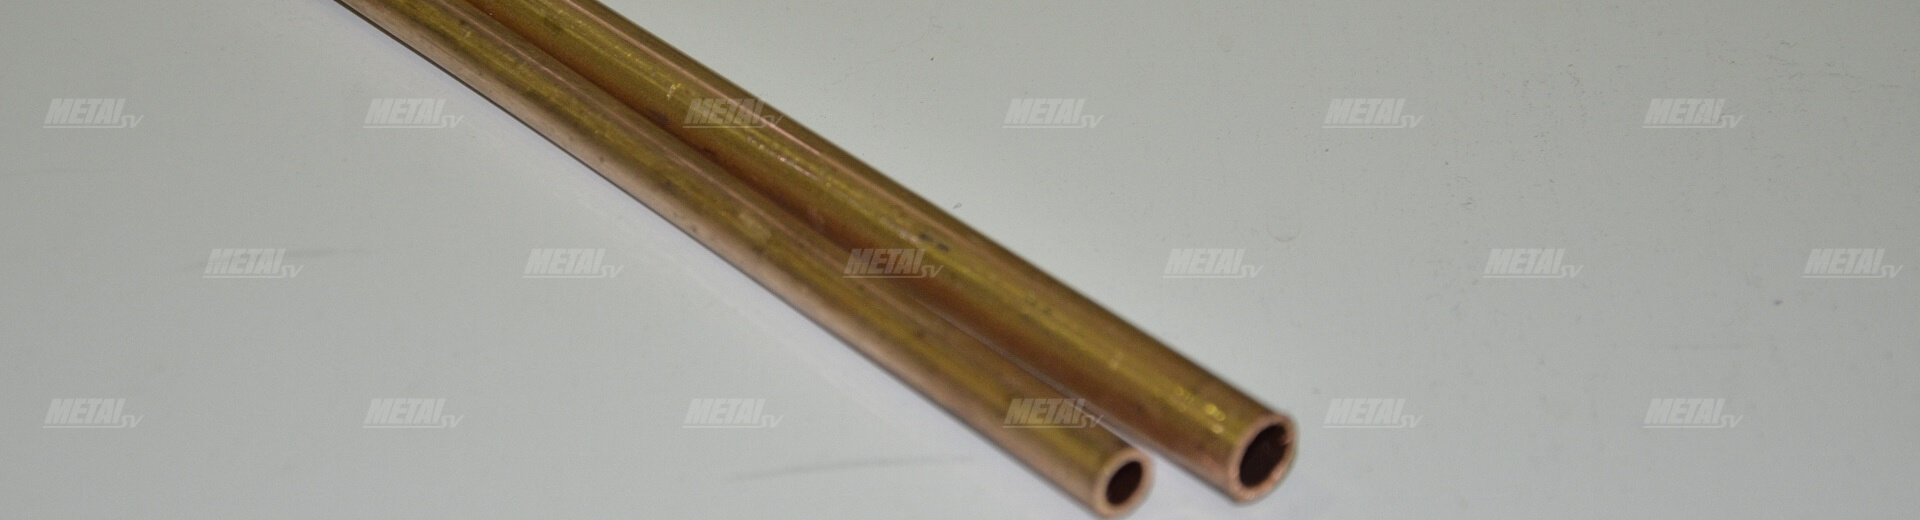 4 мм — медная труба для Кирова изображение №3